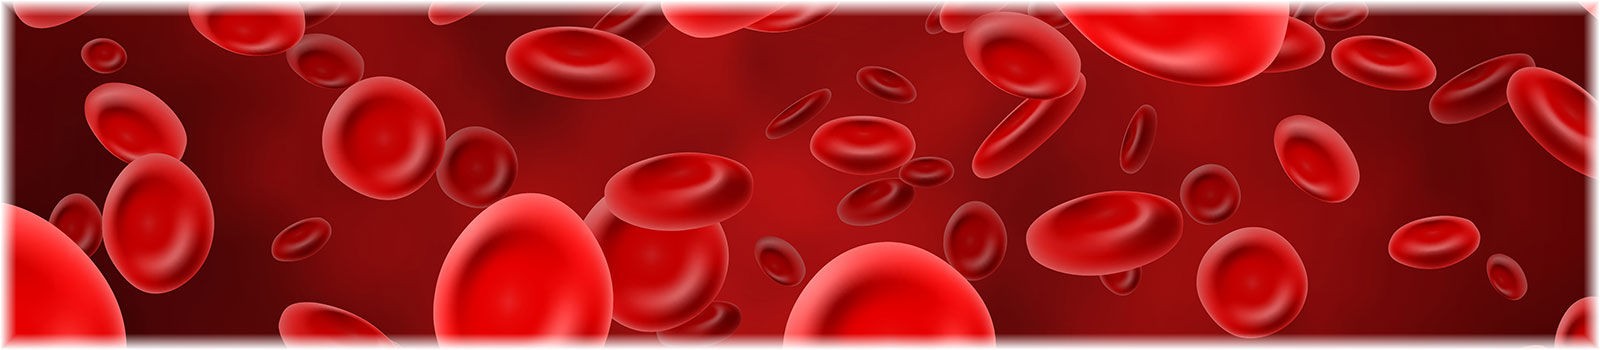 hemoglobins 1600x350 1